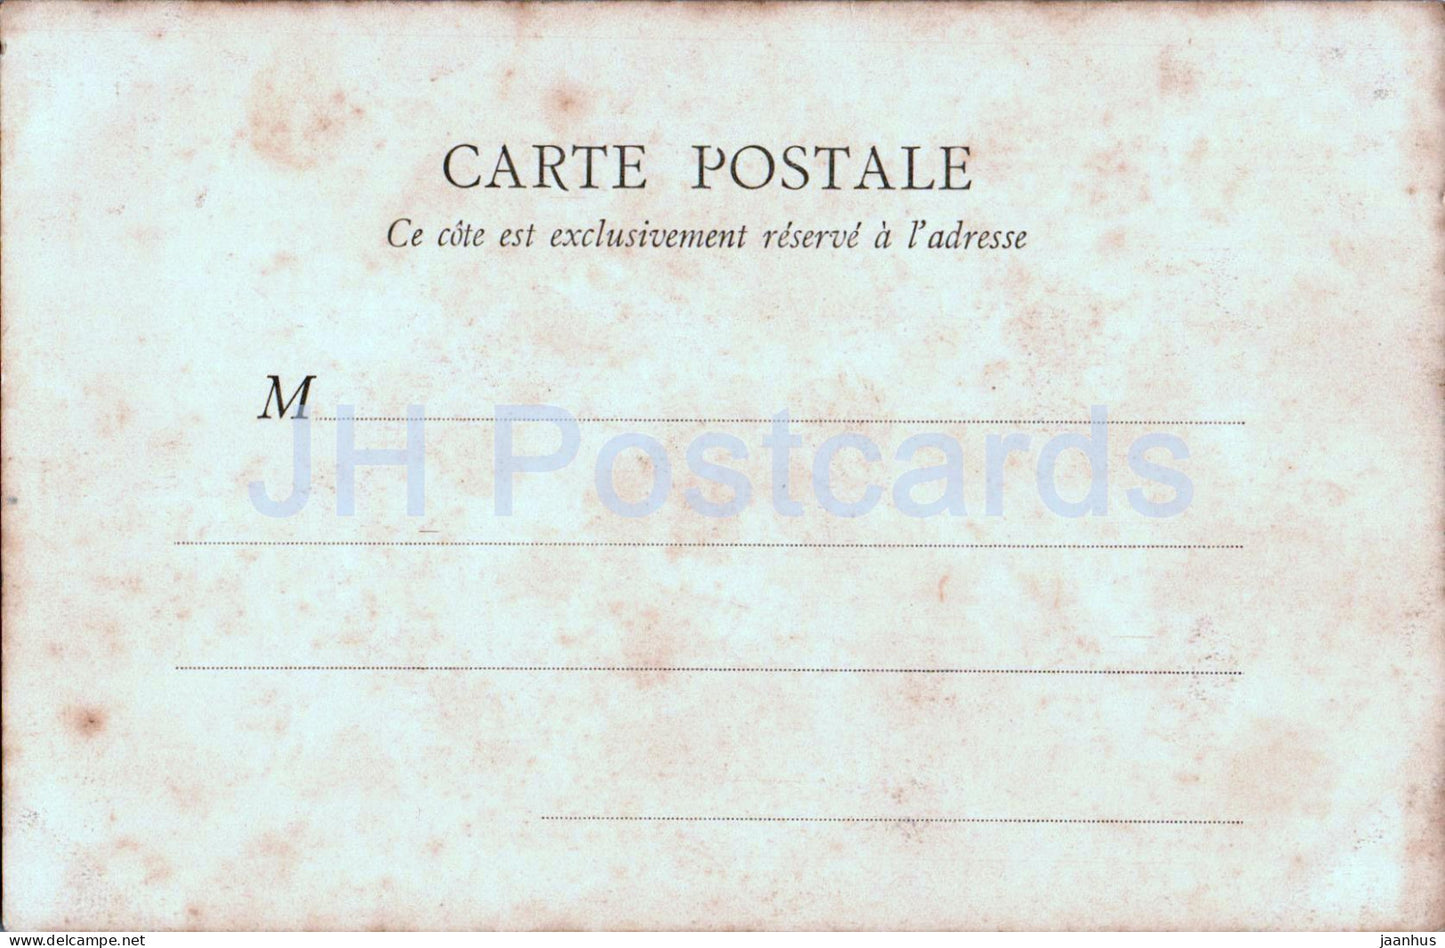 Briare - Pont Canal - pont - 2 - carte postale ancienne - France - inutilisée 